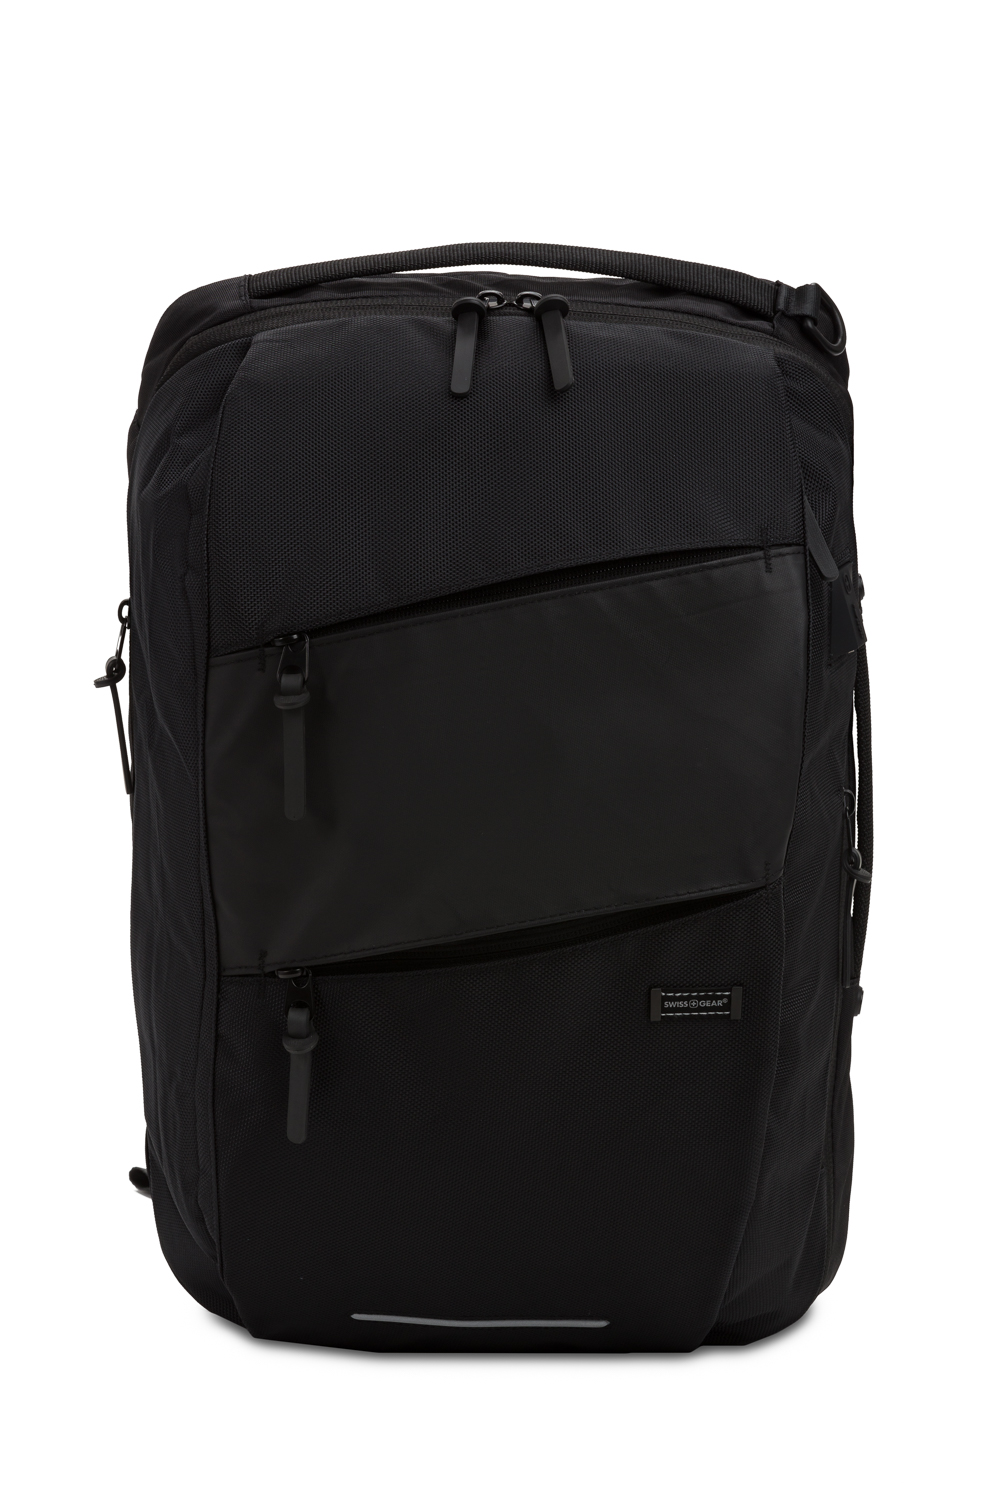 Black Zip Front Tote Laptop Bag | New Look